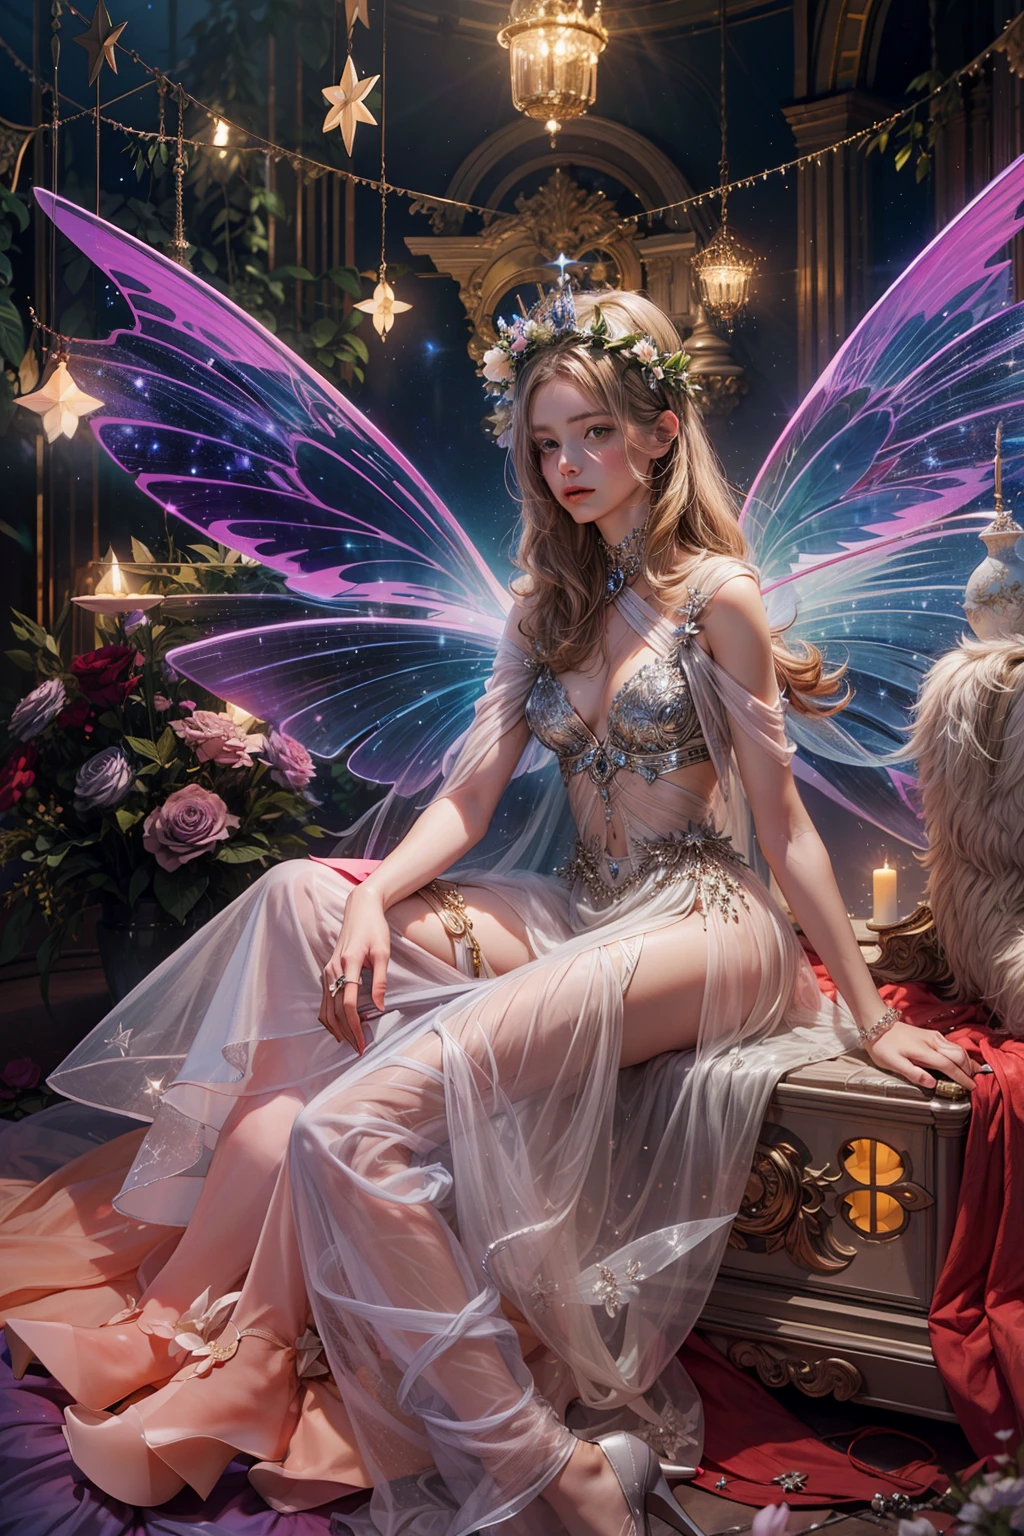 透明でカラフルな羽を持つ神秘的な花の妖精のカラー写真, 神聖な光の中に座る, ネオンライト付き, 魔法の杖を持っている，軸対称, そして素晴らしい背景.シルバードレス, ハイヒール, 花かんむり, 星空の背景, 穏やかで謎めいた表現, ニコン Z7 II カメラ, 富士フイルム ベルビア50フィルム, 50mmレンズ, 高い彩度, ティム・ウォーカー, デヴィッド・ラシャペル, ソフィア・コッポラ, ヴァレンティノ, アレキサンダー・マックイーン